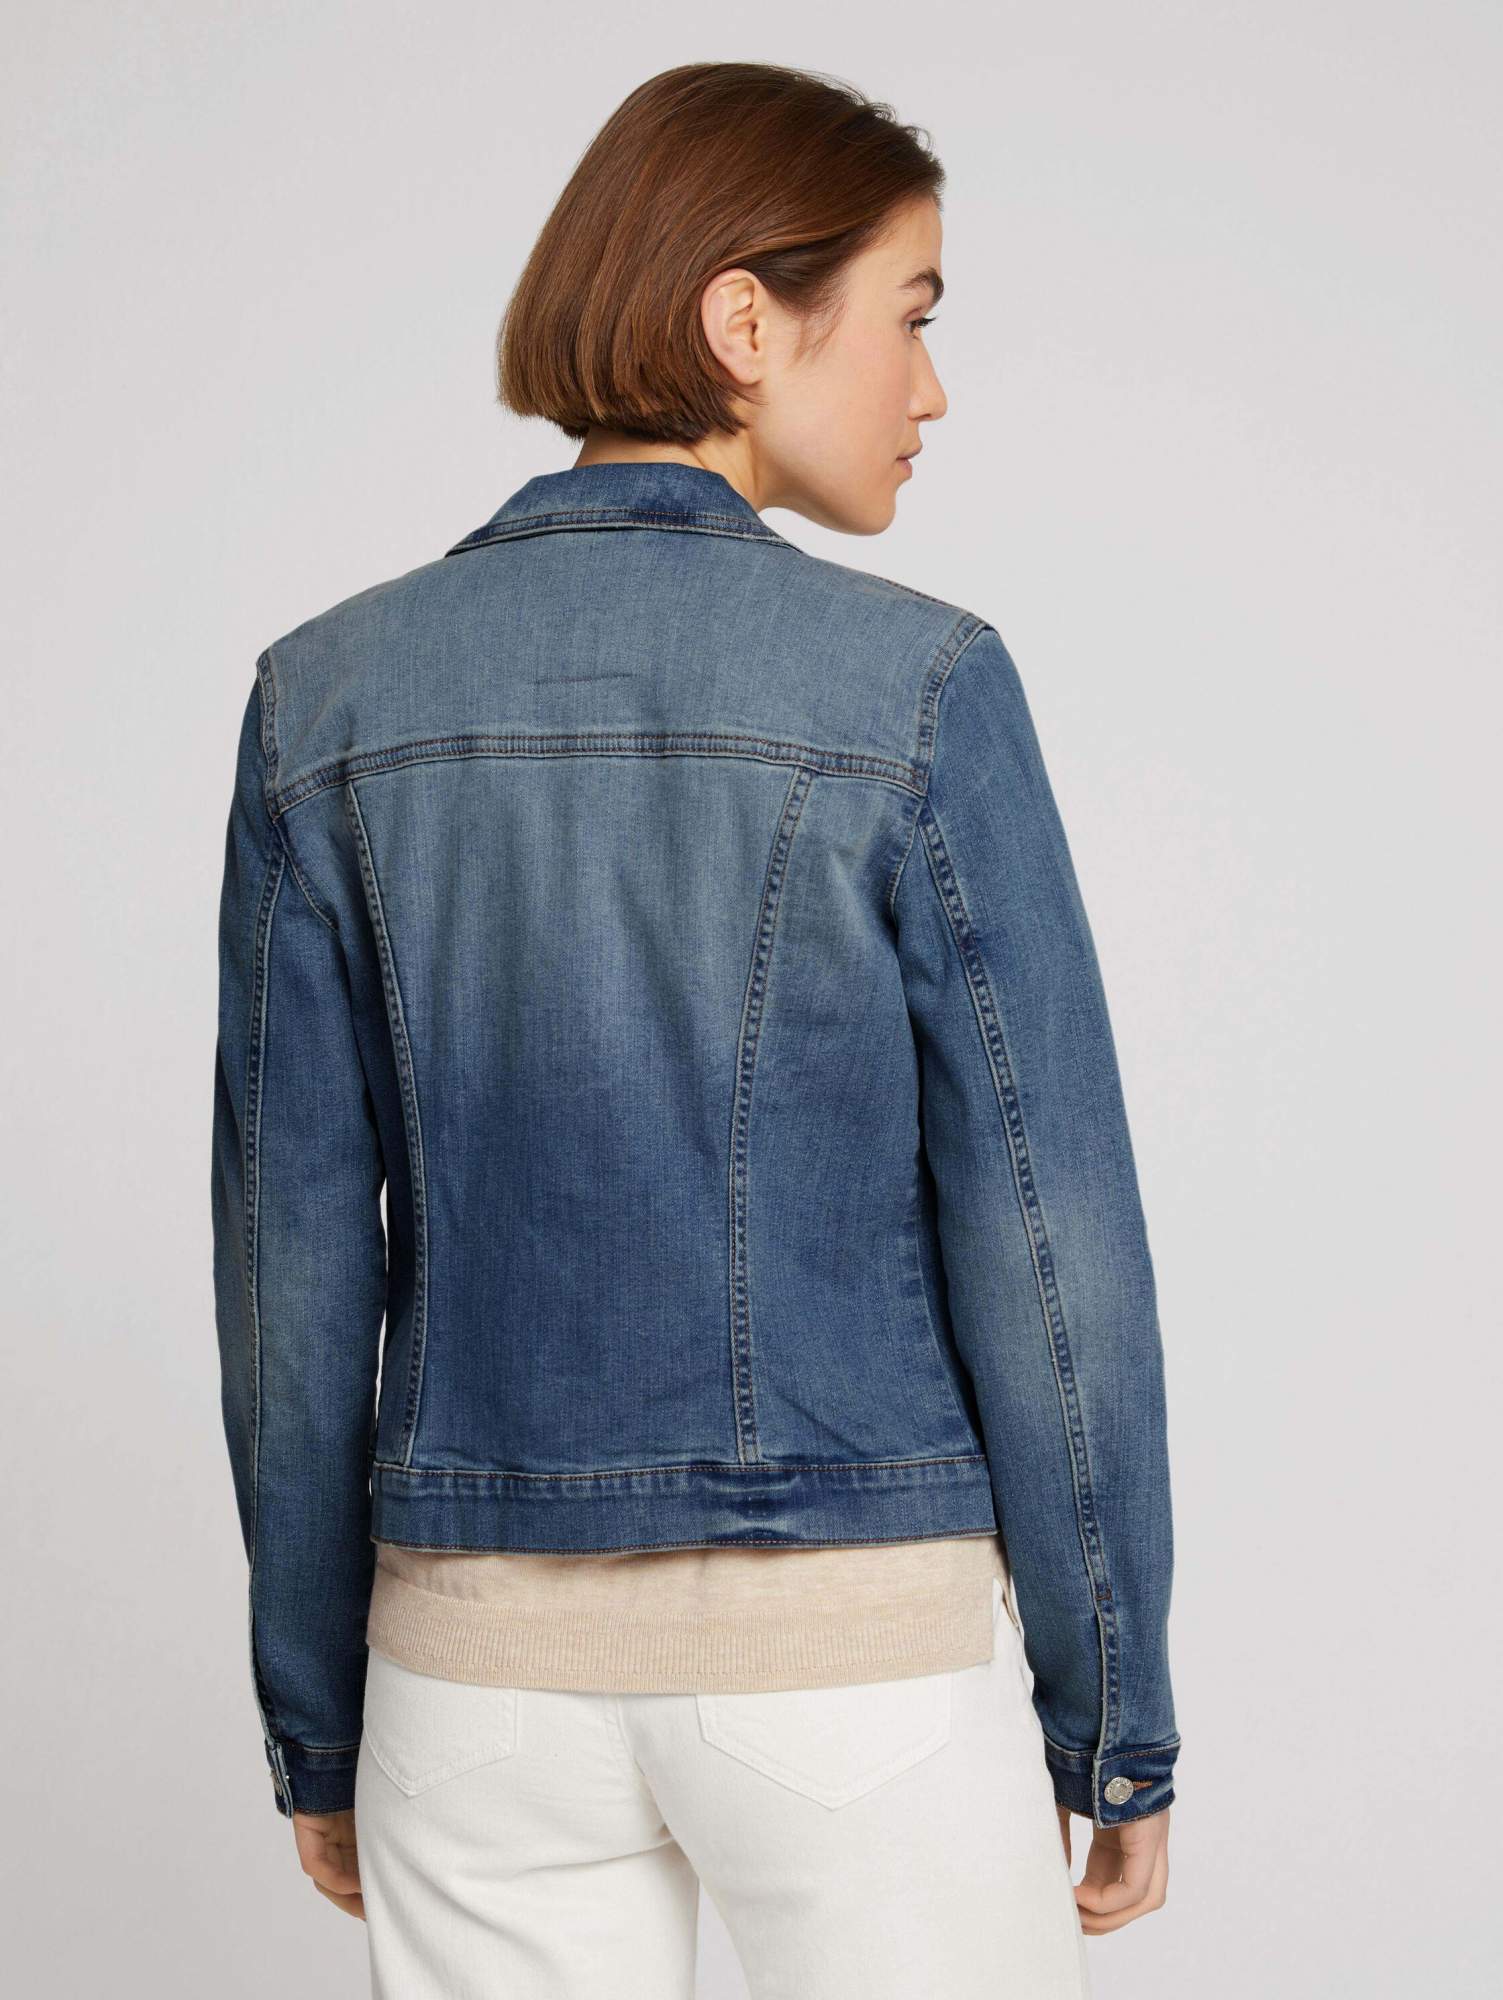 Джинсовая куртка женская TOM TAILOR 1023962 синяя XL